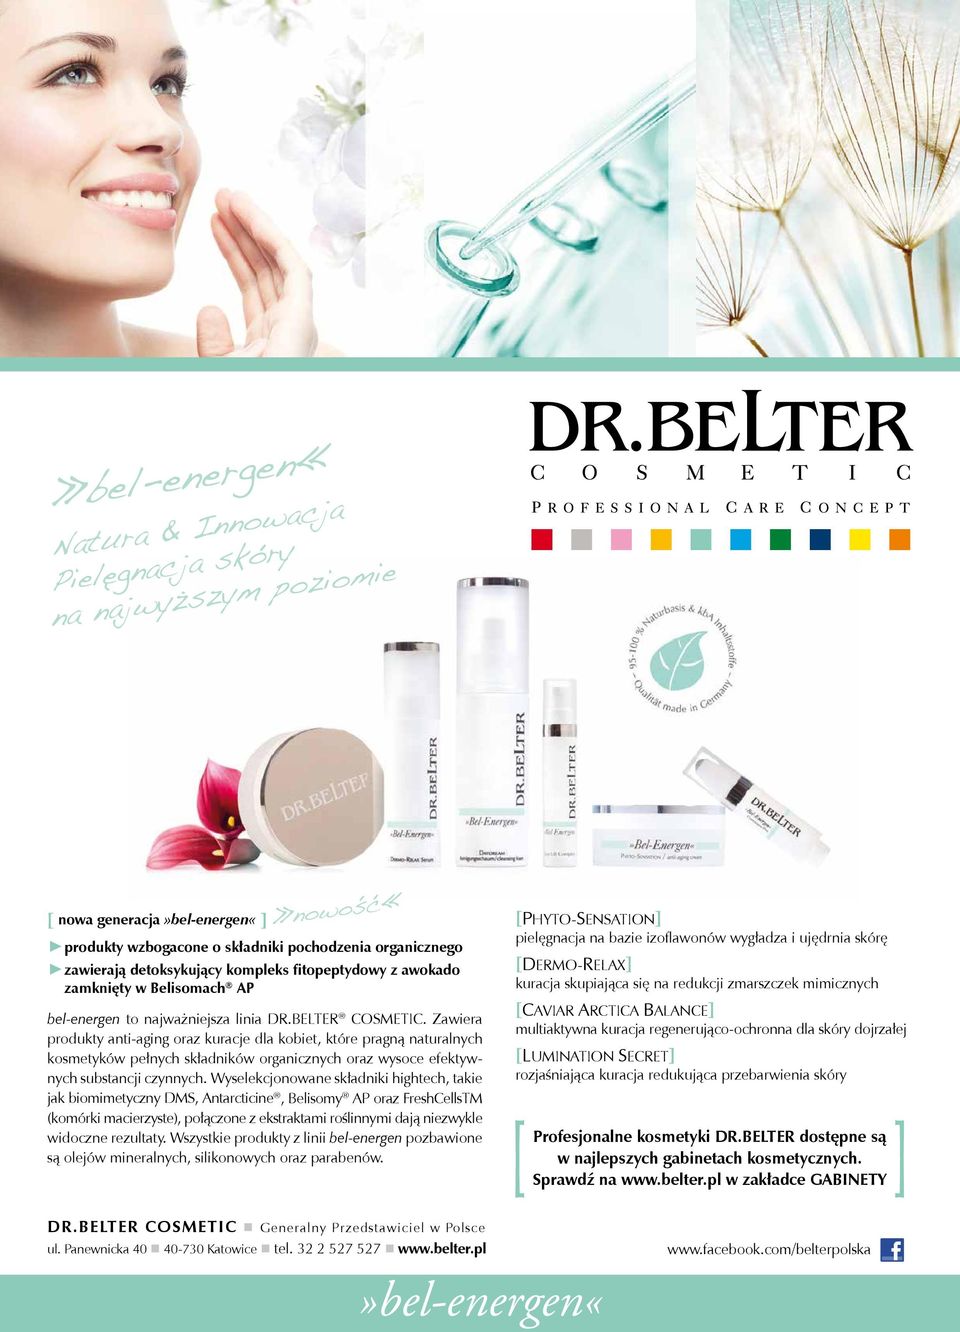 Zawiera produkty anti-aging oraz kuracje dla kobiet, które pragną naturalnych kosmetyków pełnych składników organicznych oraz wysoce efektywnych substancji czynnych.